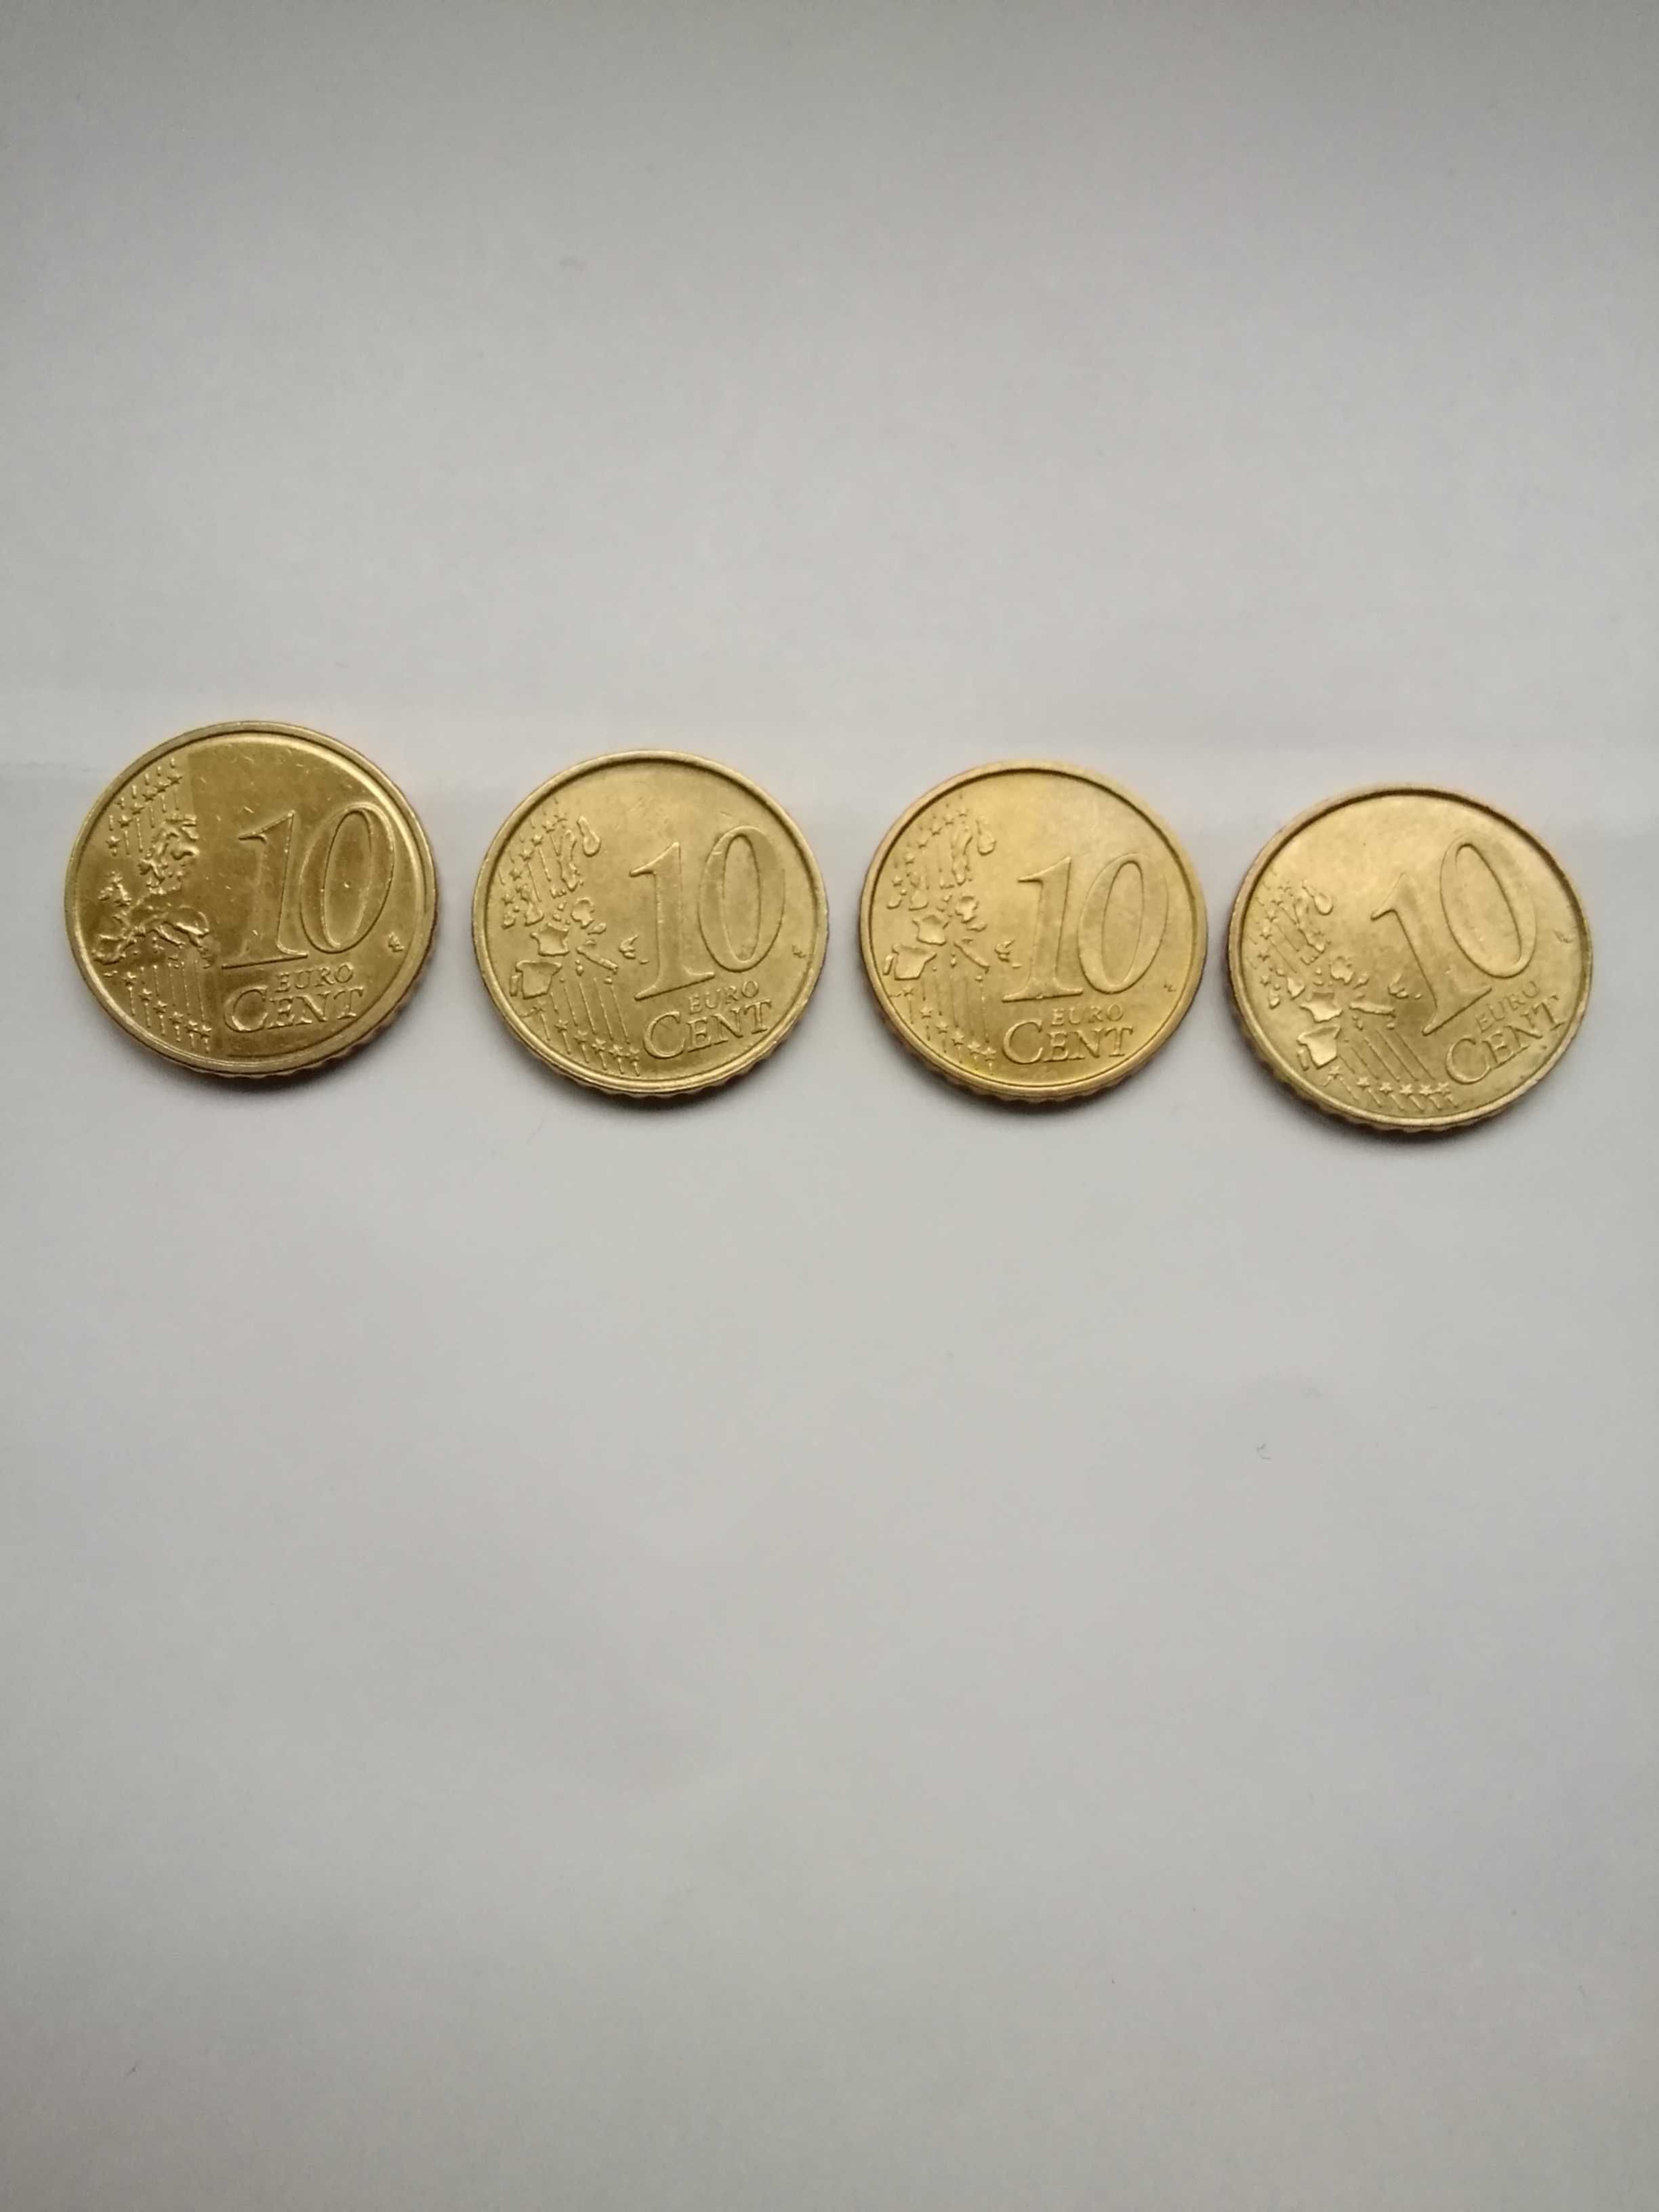 4 Monede 10 euro centi (2001 Franta+2 din 2002 Italia+ 2007 Franta).